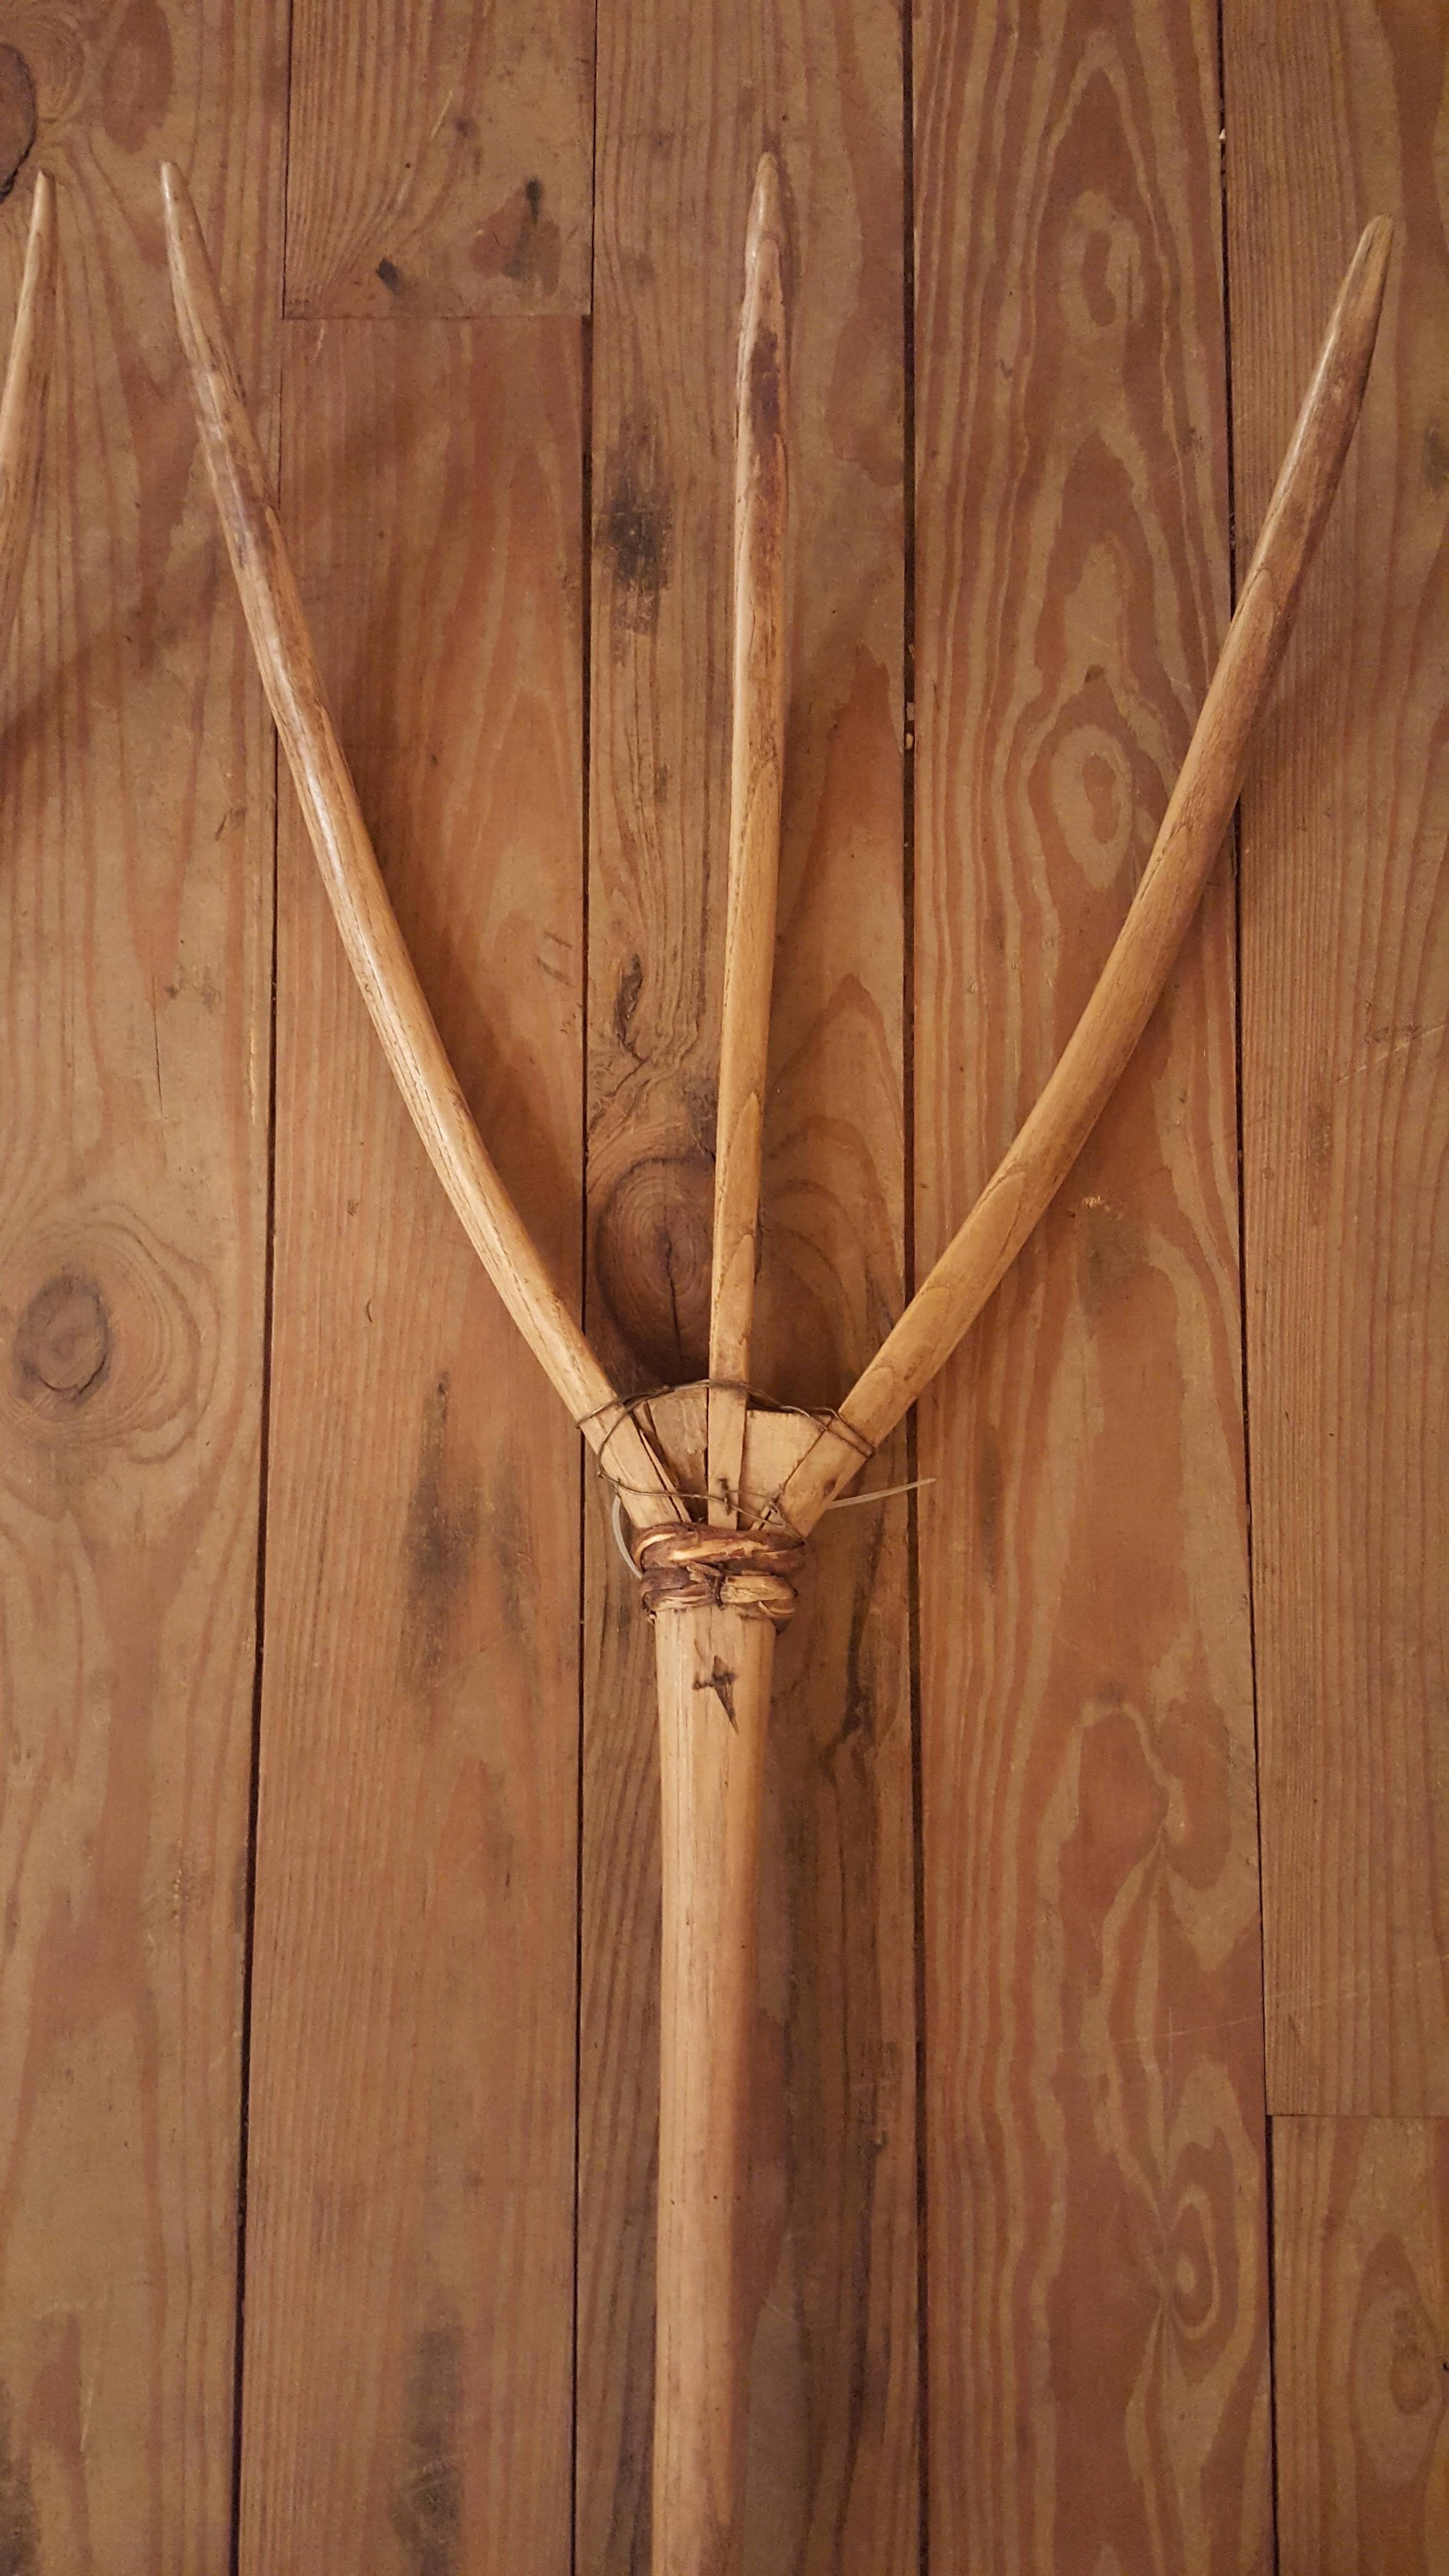 pitchforks were once carved